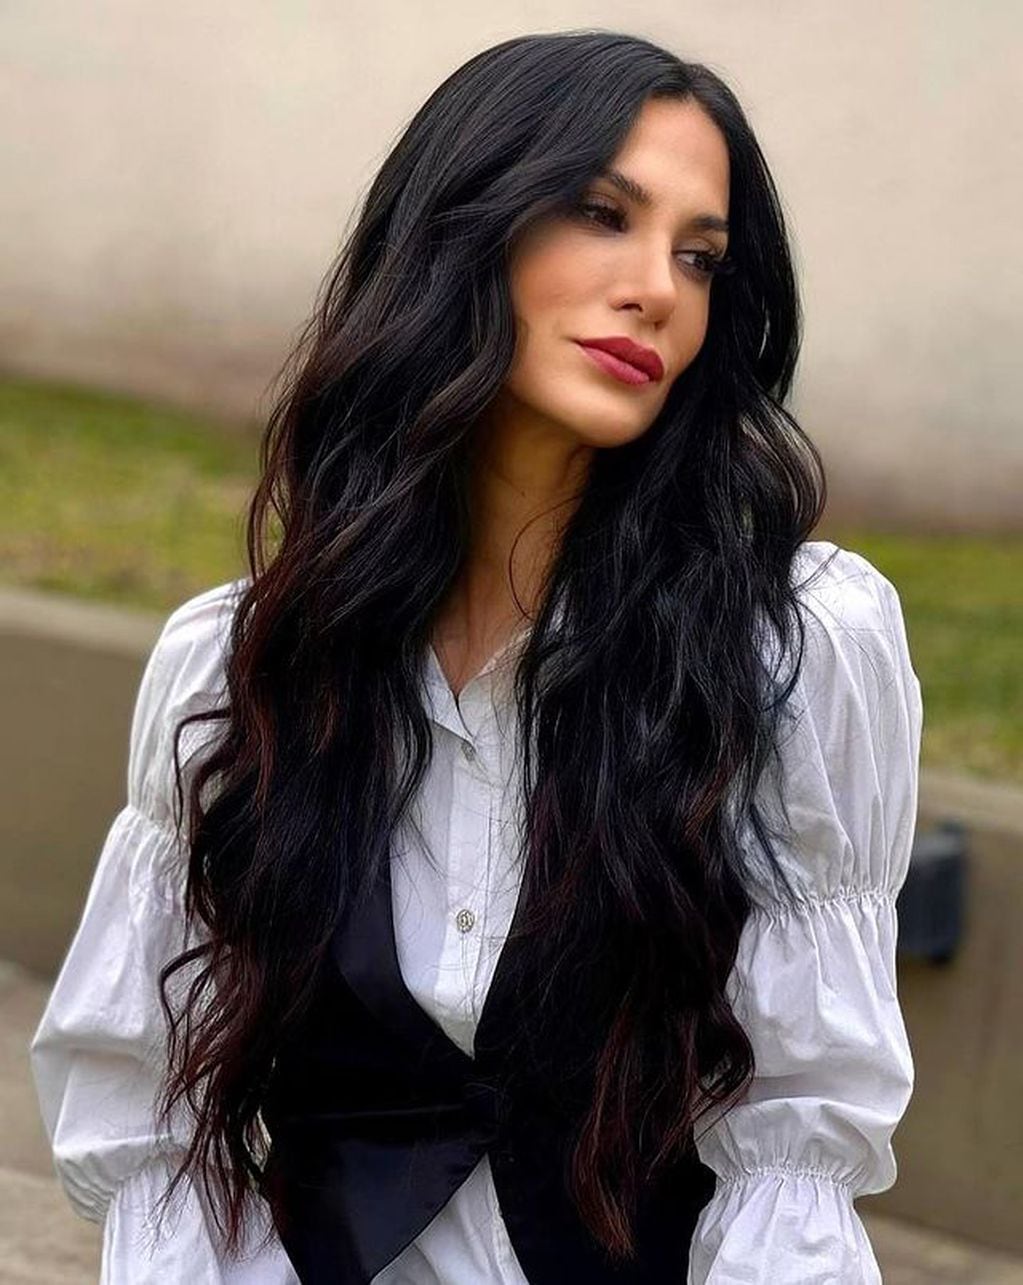 Silvina Escudero desplegó elegancia y sensualidad con un look blanco y negro